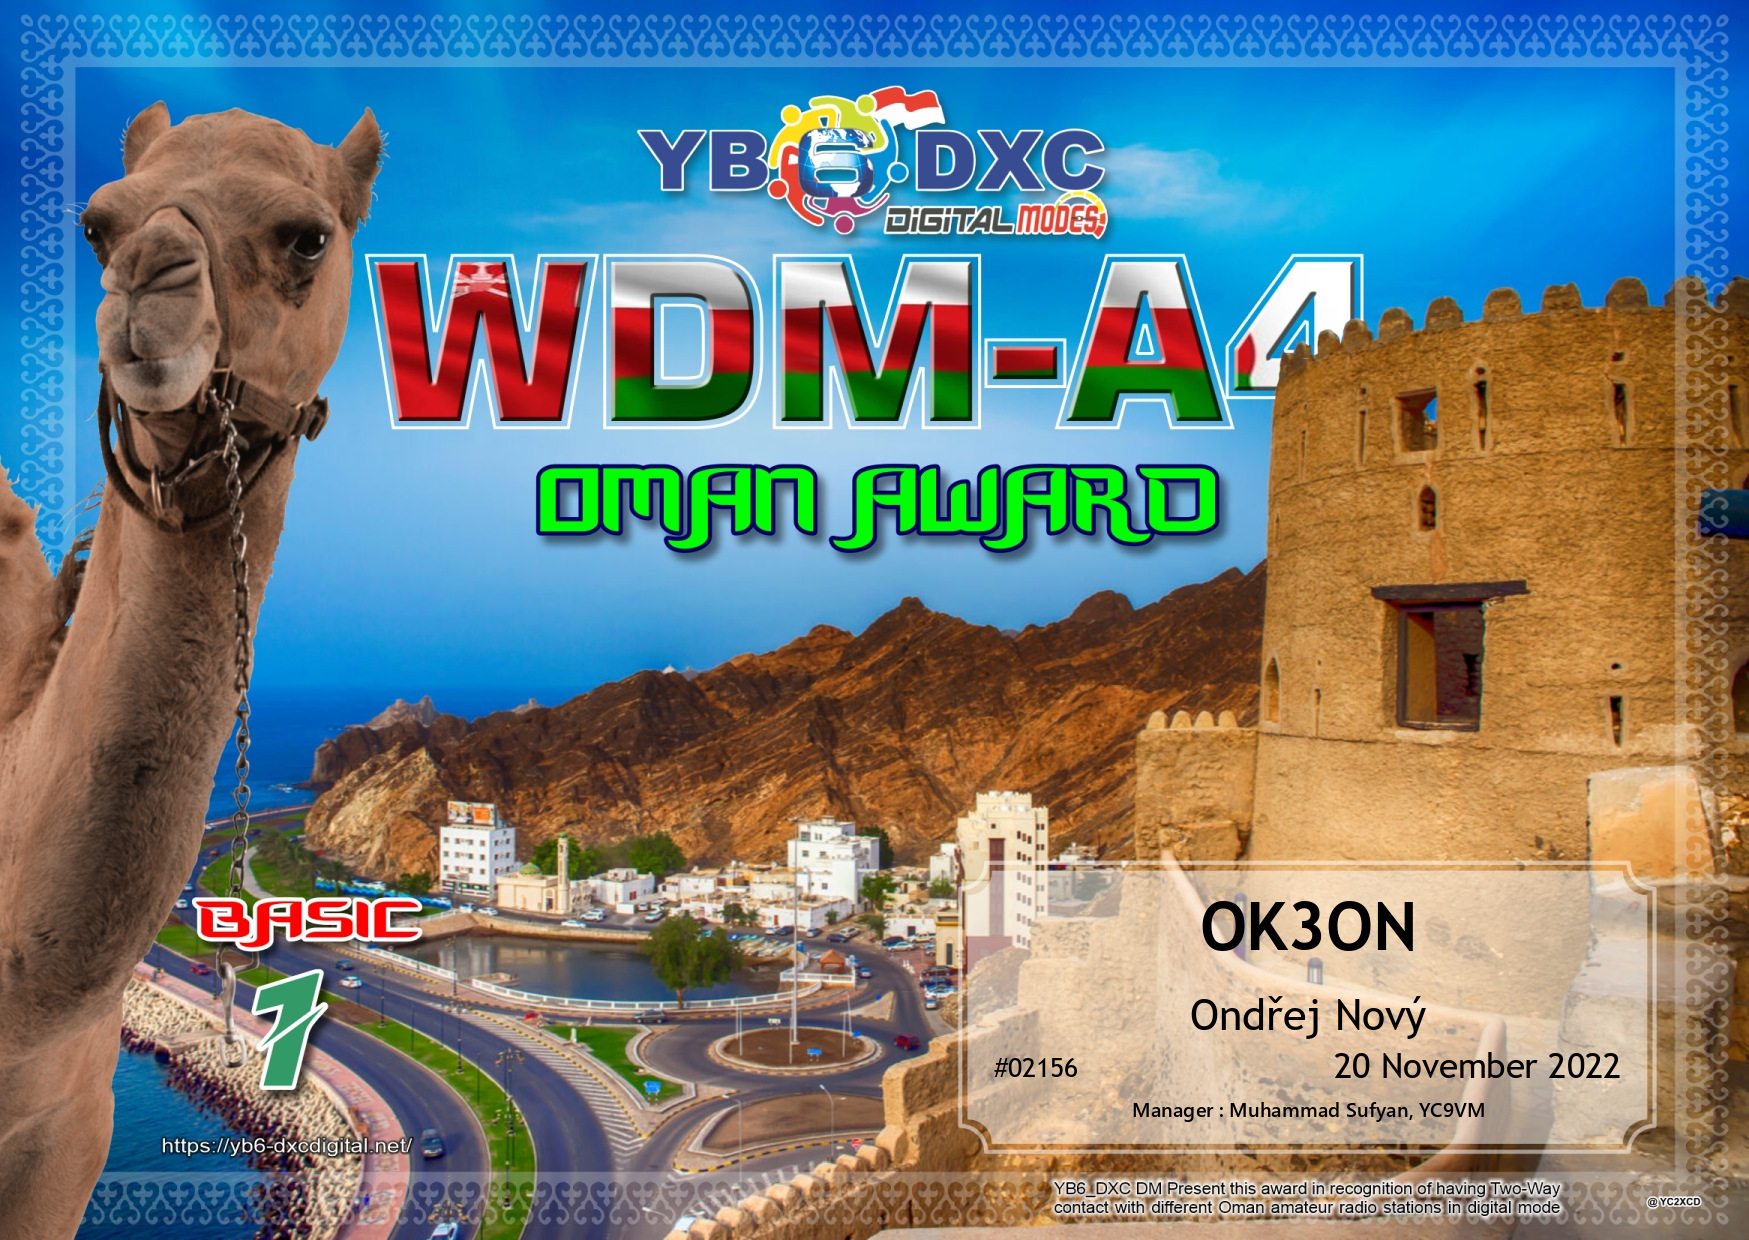 awards/OK3ON-WDMA4-BASIC_YB6DXC.jpg